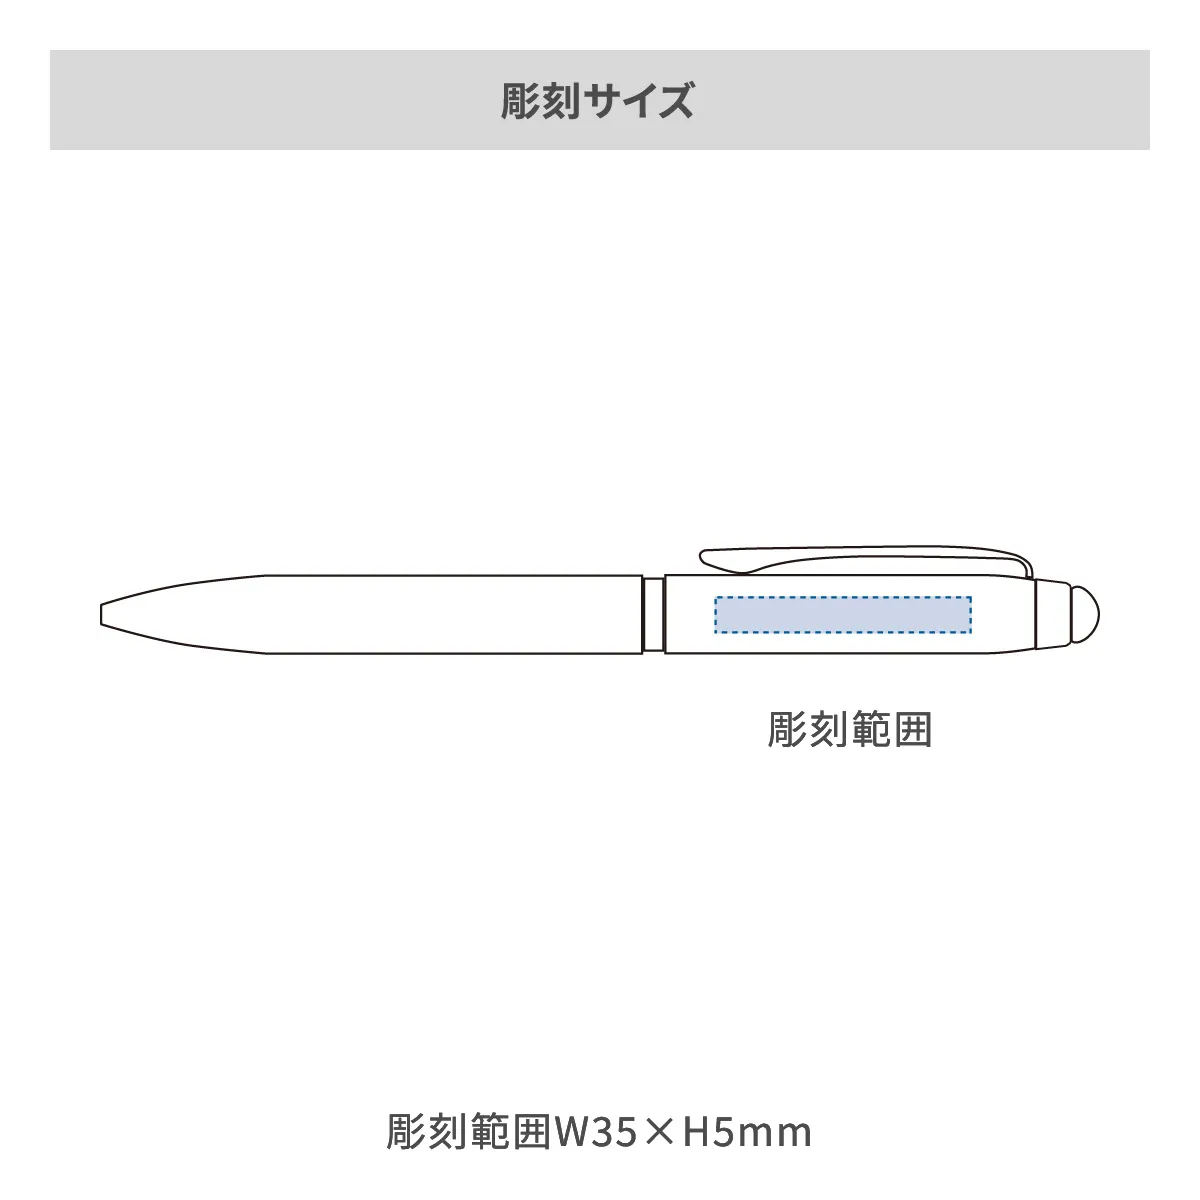 【短納期】三菱鉛筆 ジェットストリーム スタイラス 3色ボールペン 0.5mm【多機能ペン / レーザー彫刻】 画像2